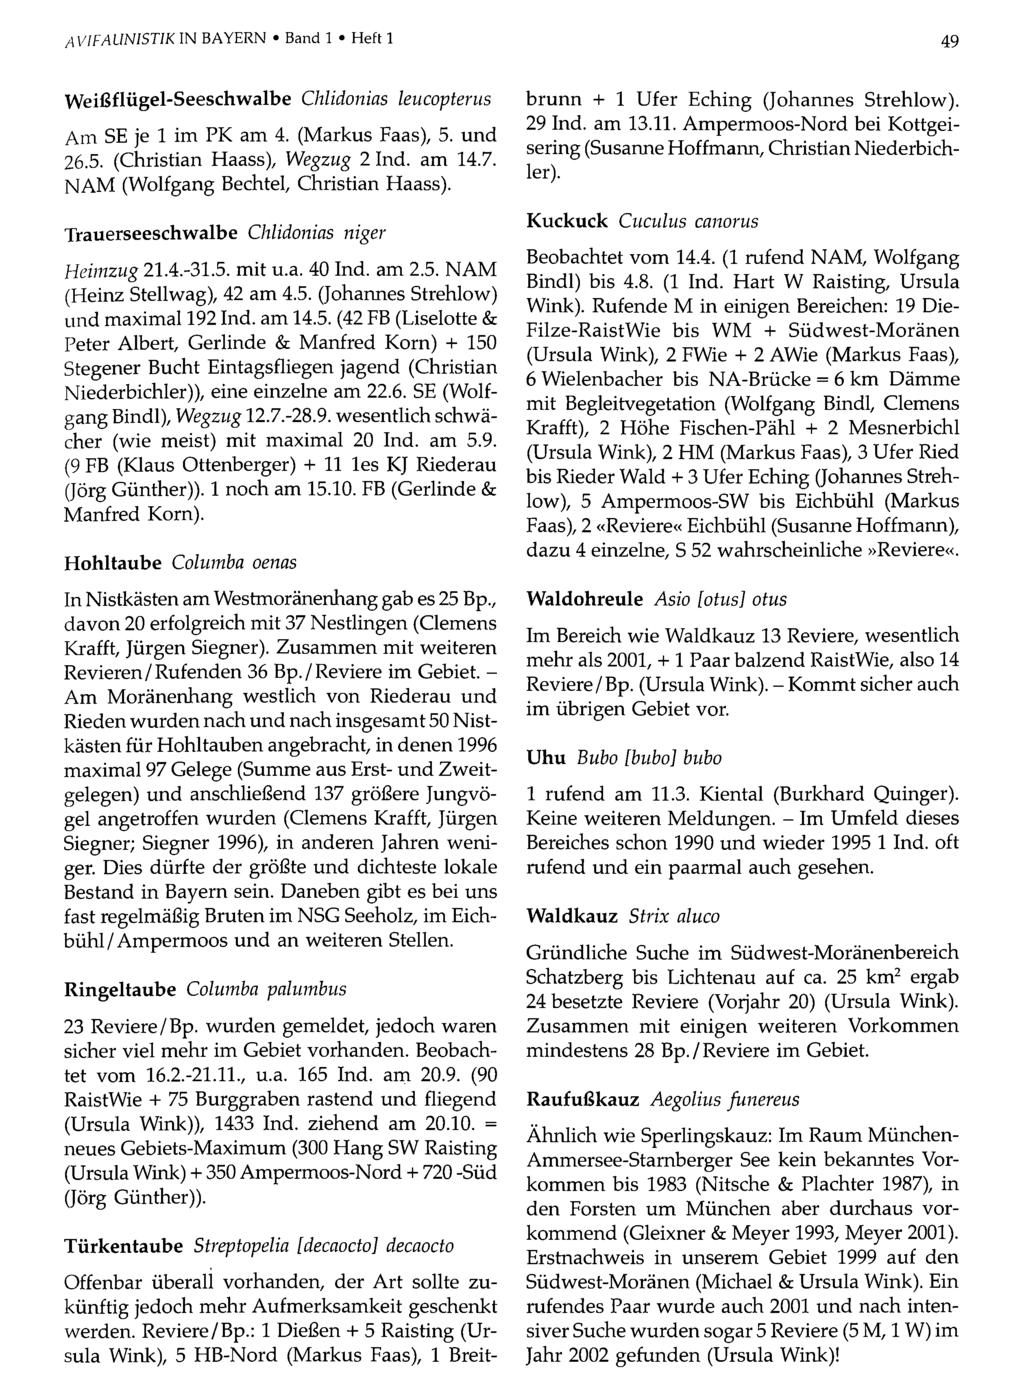 AVIFAUNISTIK IN BAYERN Band Ornithologische 1 Heft 1Gesellschaft Bayern, download unter www.biologiezentrum.at 49 Weißflügel-Seeschwalbe Chlidonias leucopterus Am SE je 1 im PK am 4. (Markus Faas), 5.